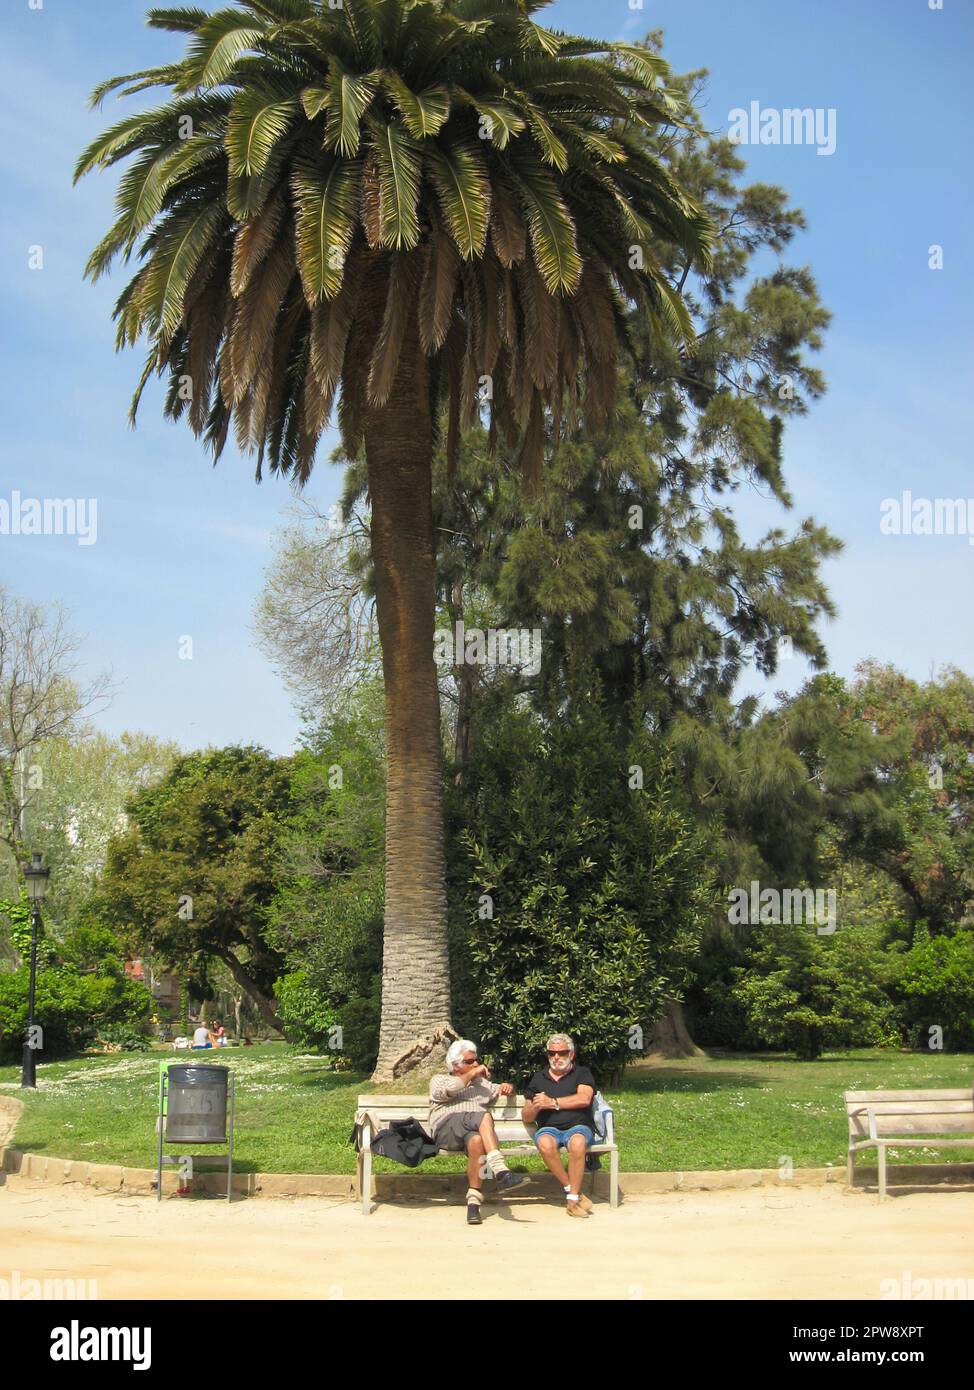 Barcelona, Spanien - 4. April 2011: Zwei grauhaarige Männer sitzen auf der Bank unter einer hohen Palme im Park und reden Stockfoto